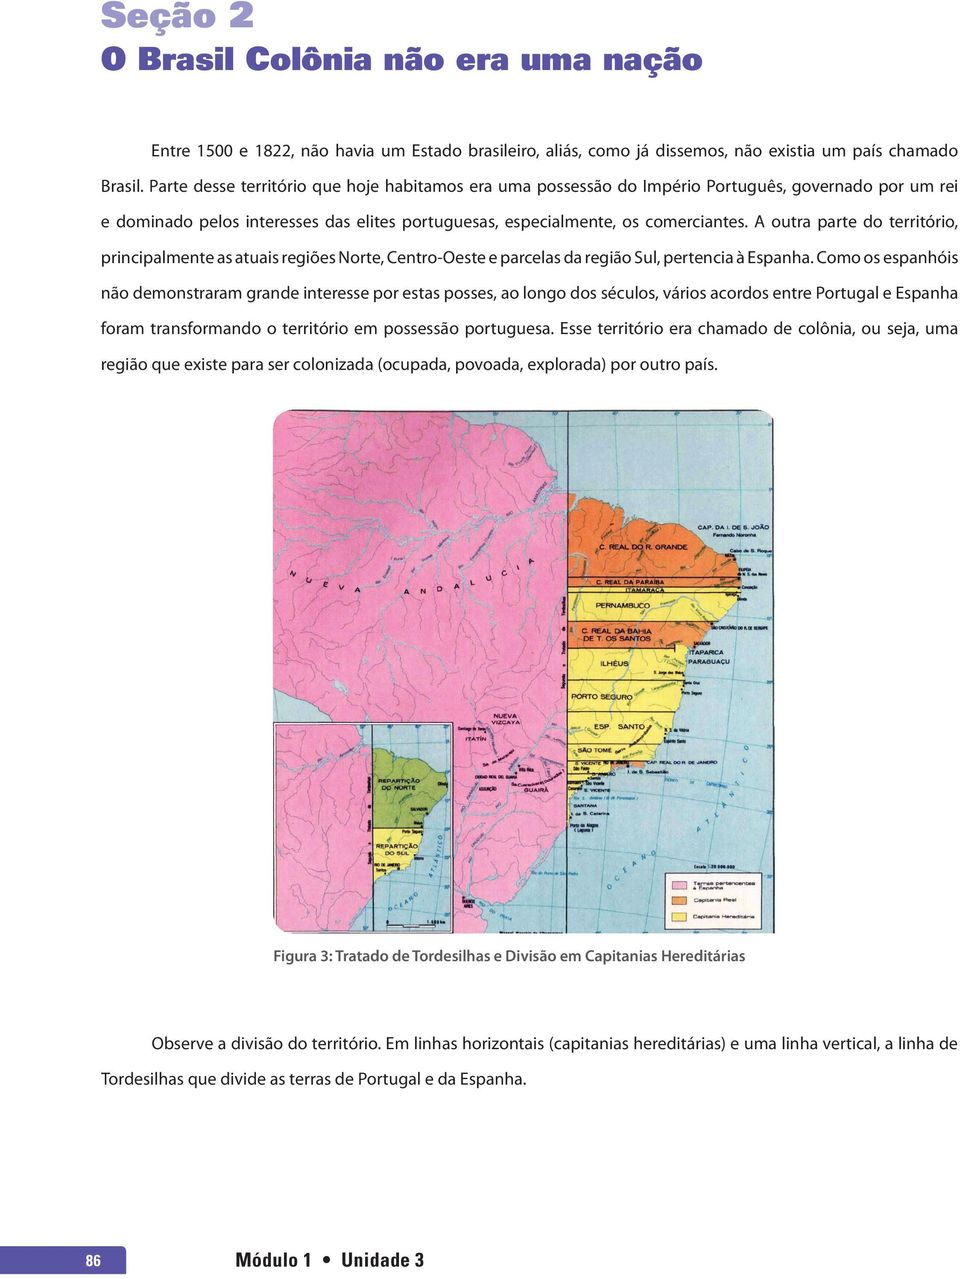 A outra parte do território, principalmente as atuais regiões Norte, Centro-Oeste e parcelas da região Sul, pertencia à Espanha.